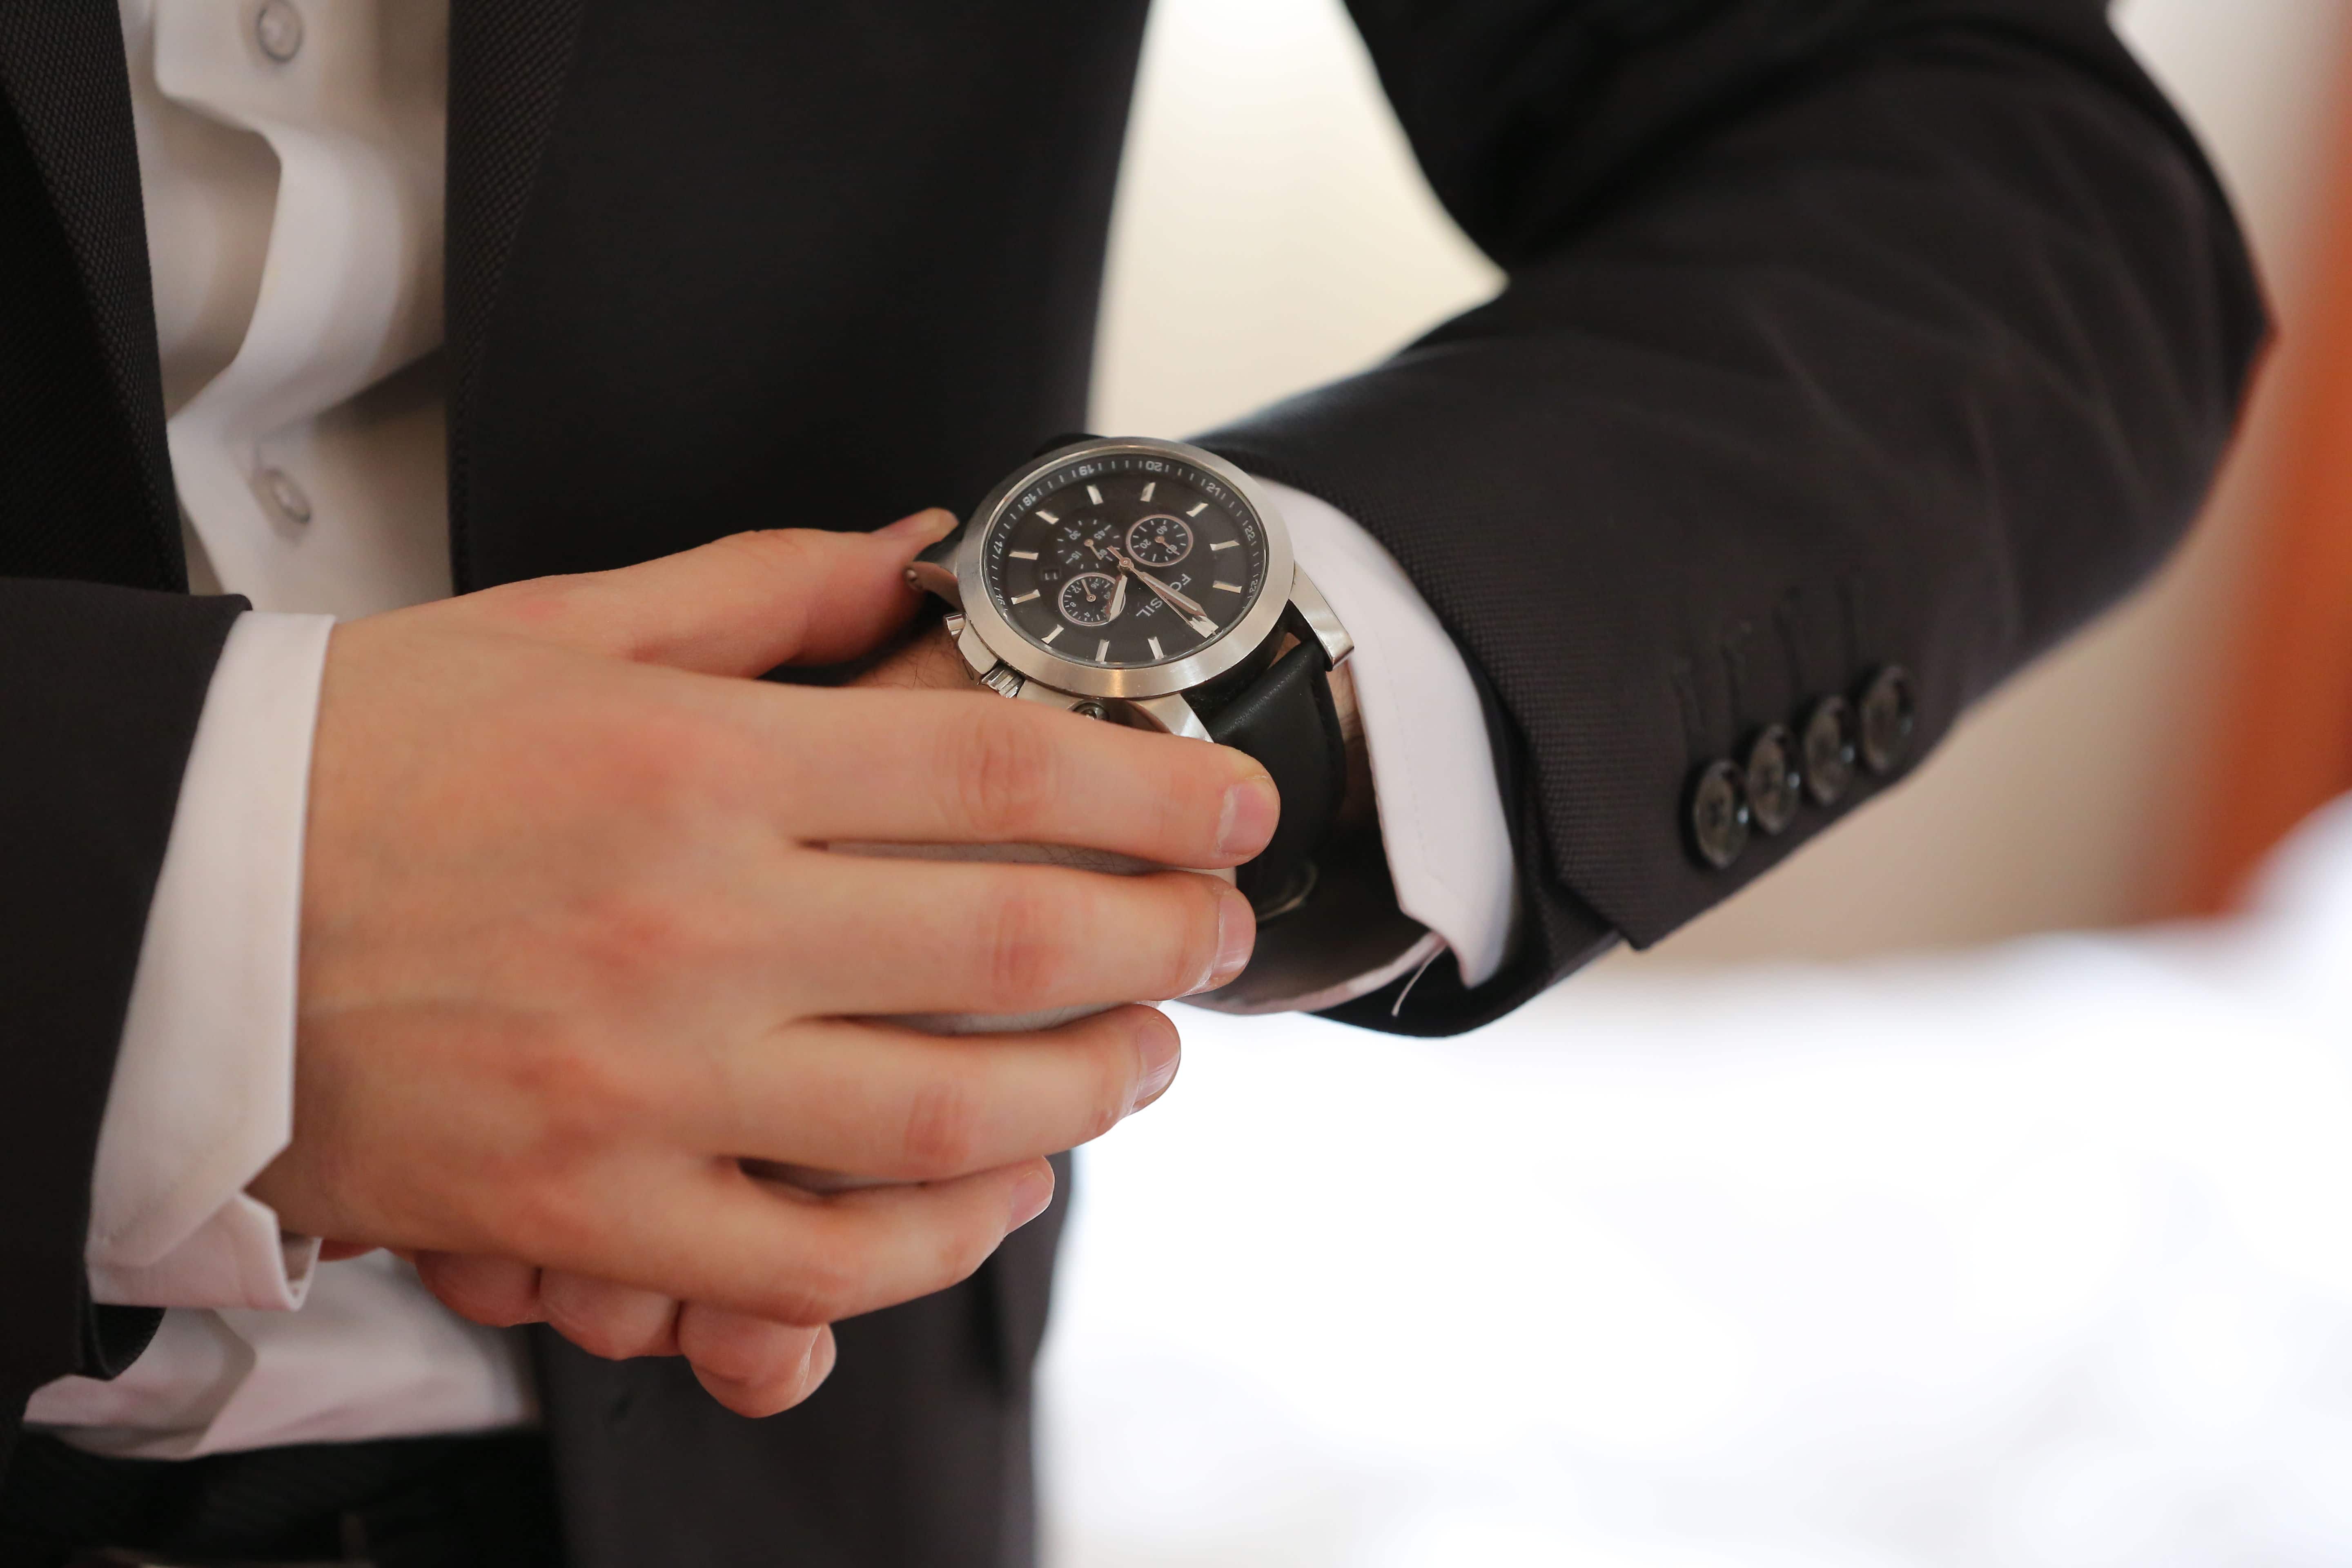 Постоянно смотрю на часы. Наручные часы на руке. Часы ручные на руке. Мужчина с часами на руке. Мужская рука с часами.